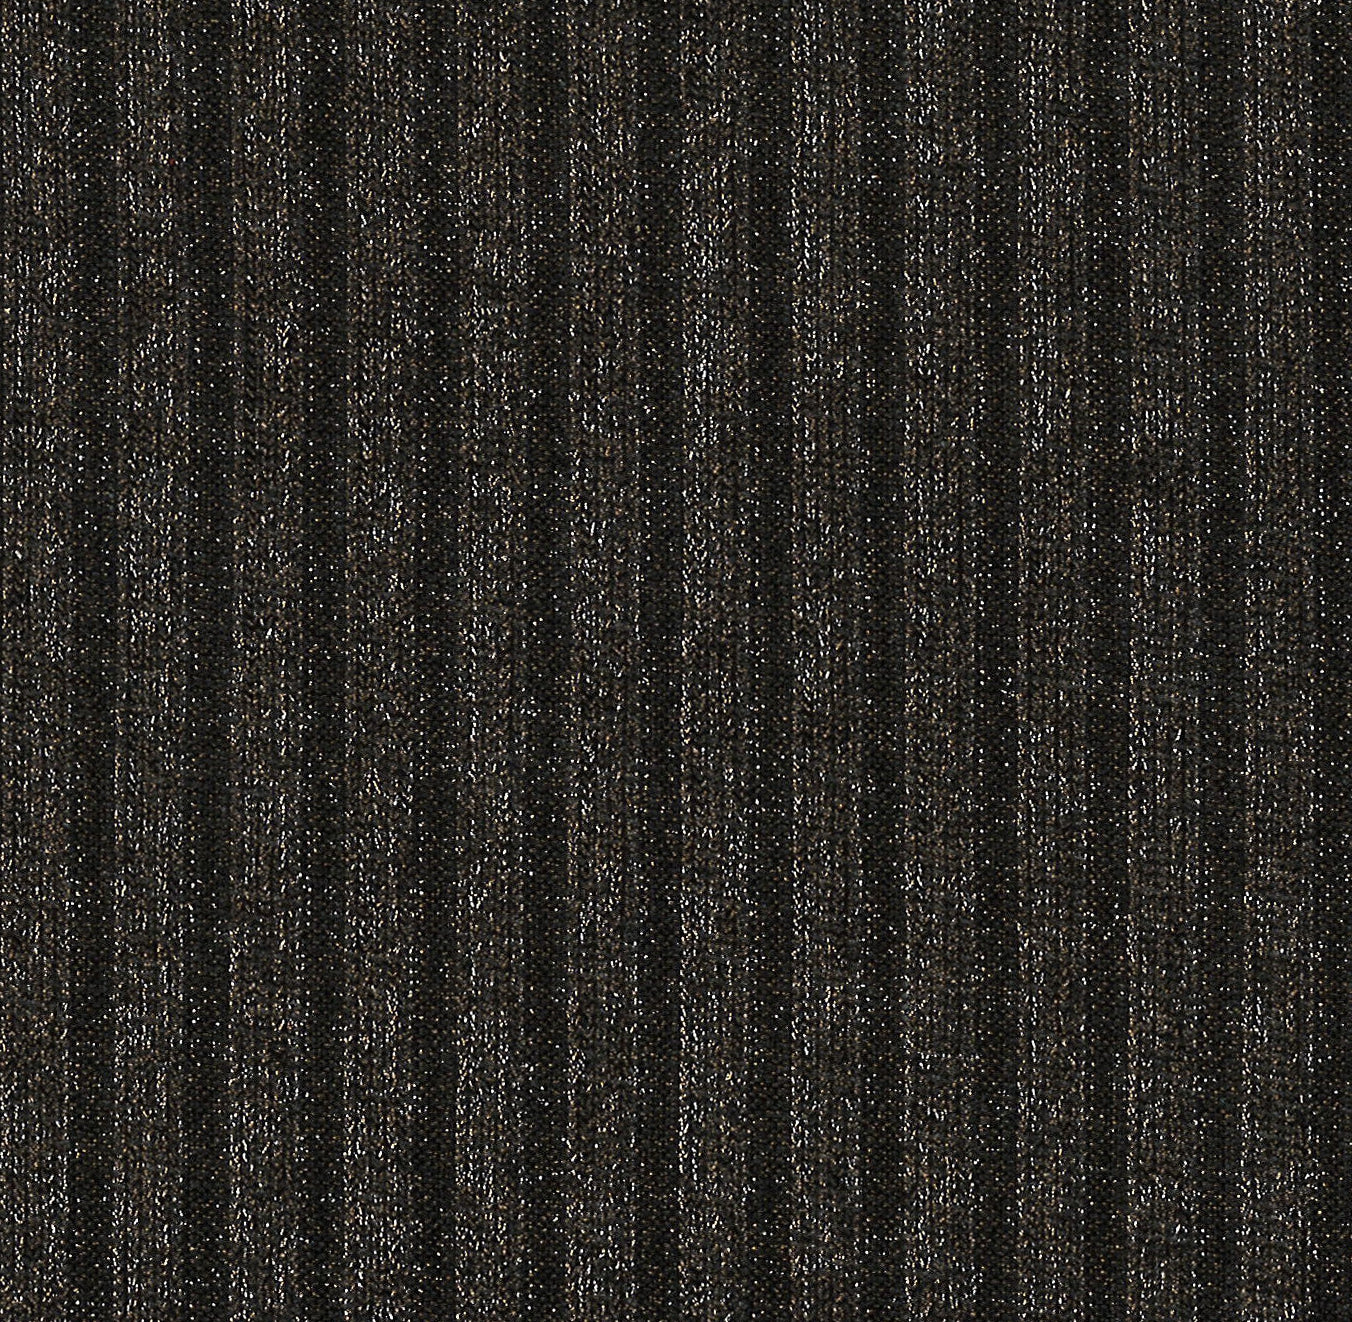 16025-02 Black, Bronze Knit Rib Foil Plain Dyed Blend black blend bronze foil knit plain dyed polyester rib spandex Foil, Rib - knit fabric - woven fabric - fabric company - fabric wholesale - fabric b2b - fabric factory - high quality fabric - hong kong fabric - fabric hk - acetate fabric - cotton fabric - linen fabric - metallic fabric - nylon fabric - polyester fabric - spandex fabric - chun wing hing - cwh hk - fabric worldwide ship - 針織布 - 梳織布 - 布料公司- 布料批發 - 香港布料 - 秦榮興